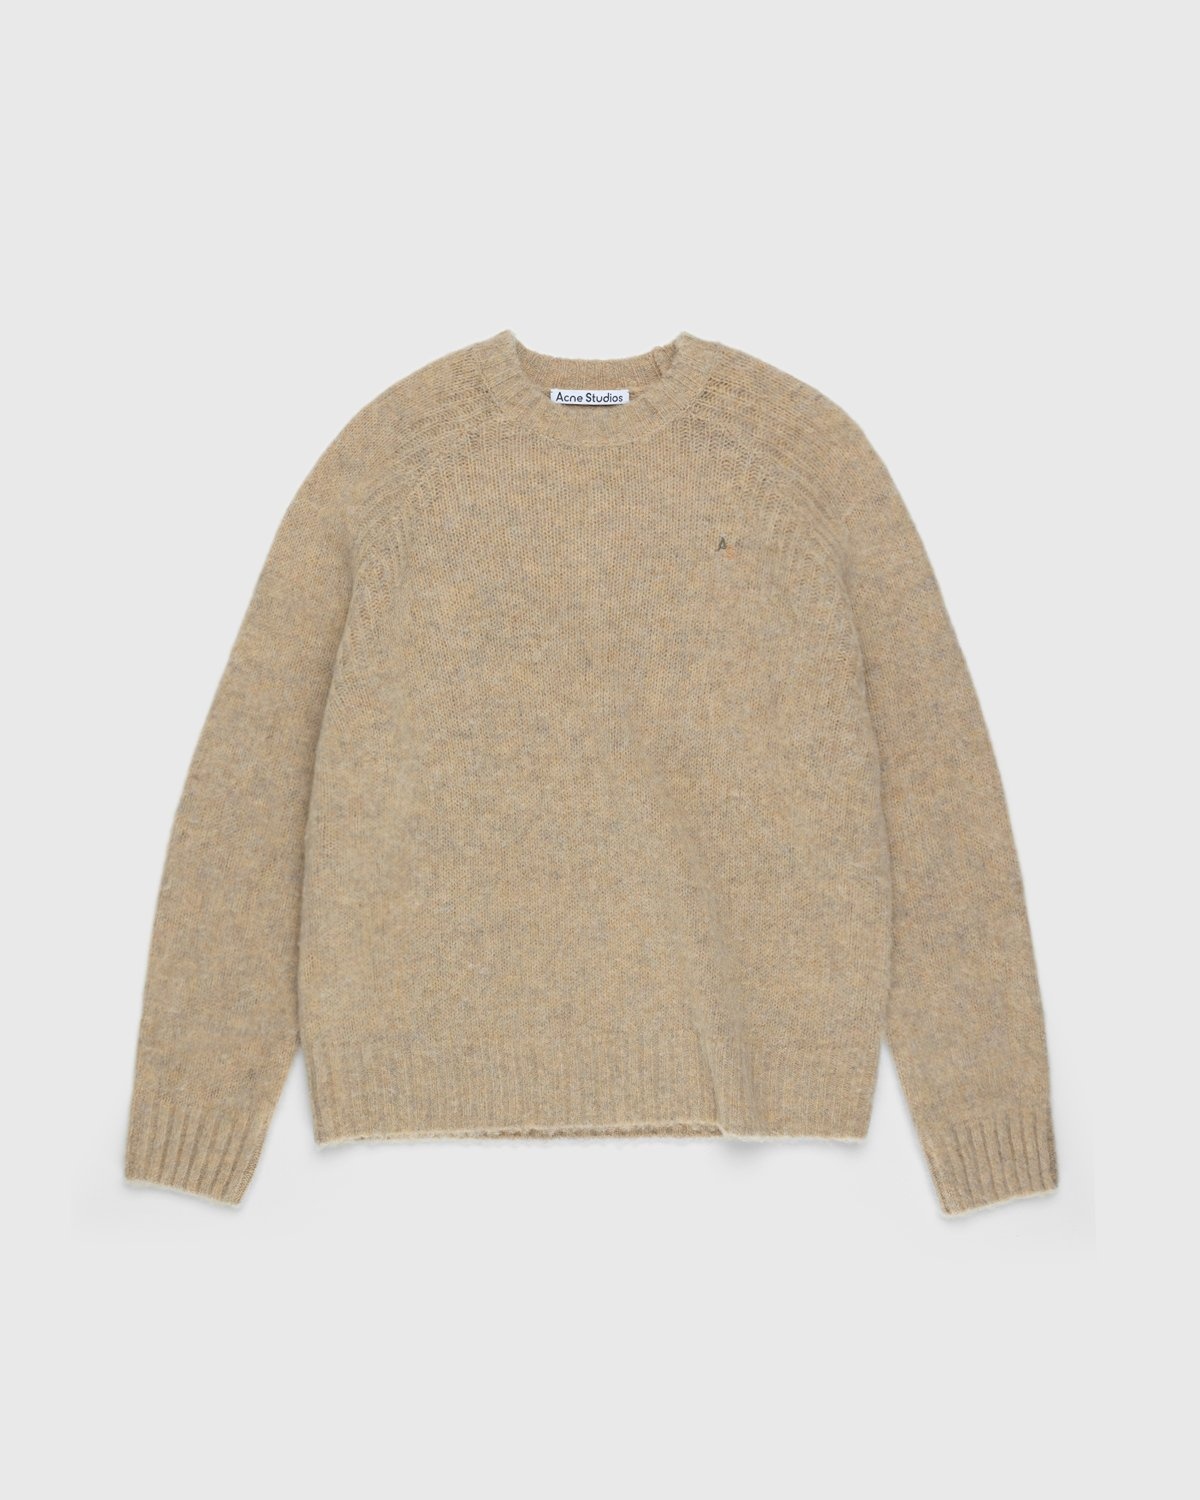 Acne Studios – Brushed Wool Crewneck Sweater Toffee Brown - Crewnecks - Brown - Image 1